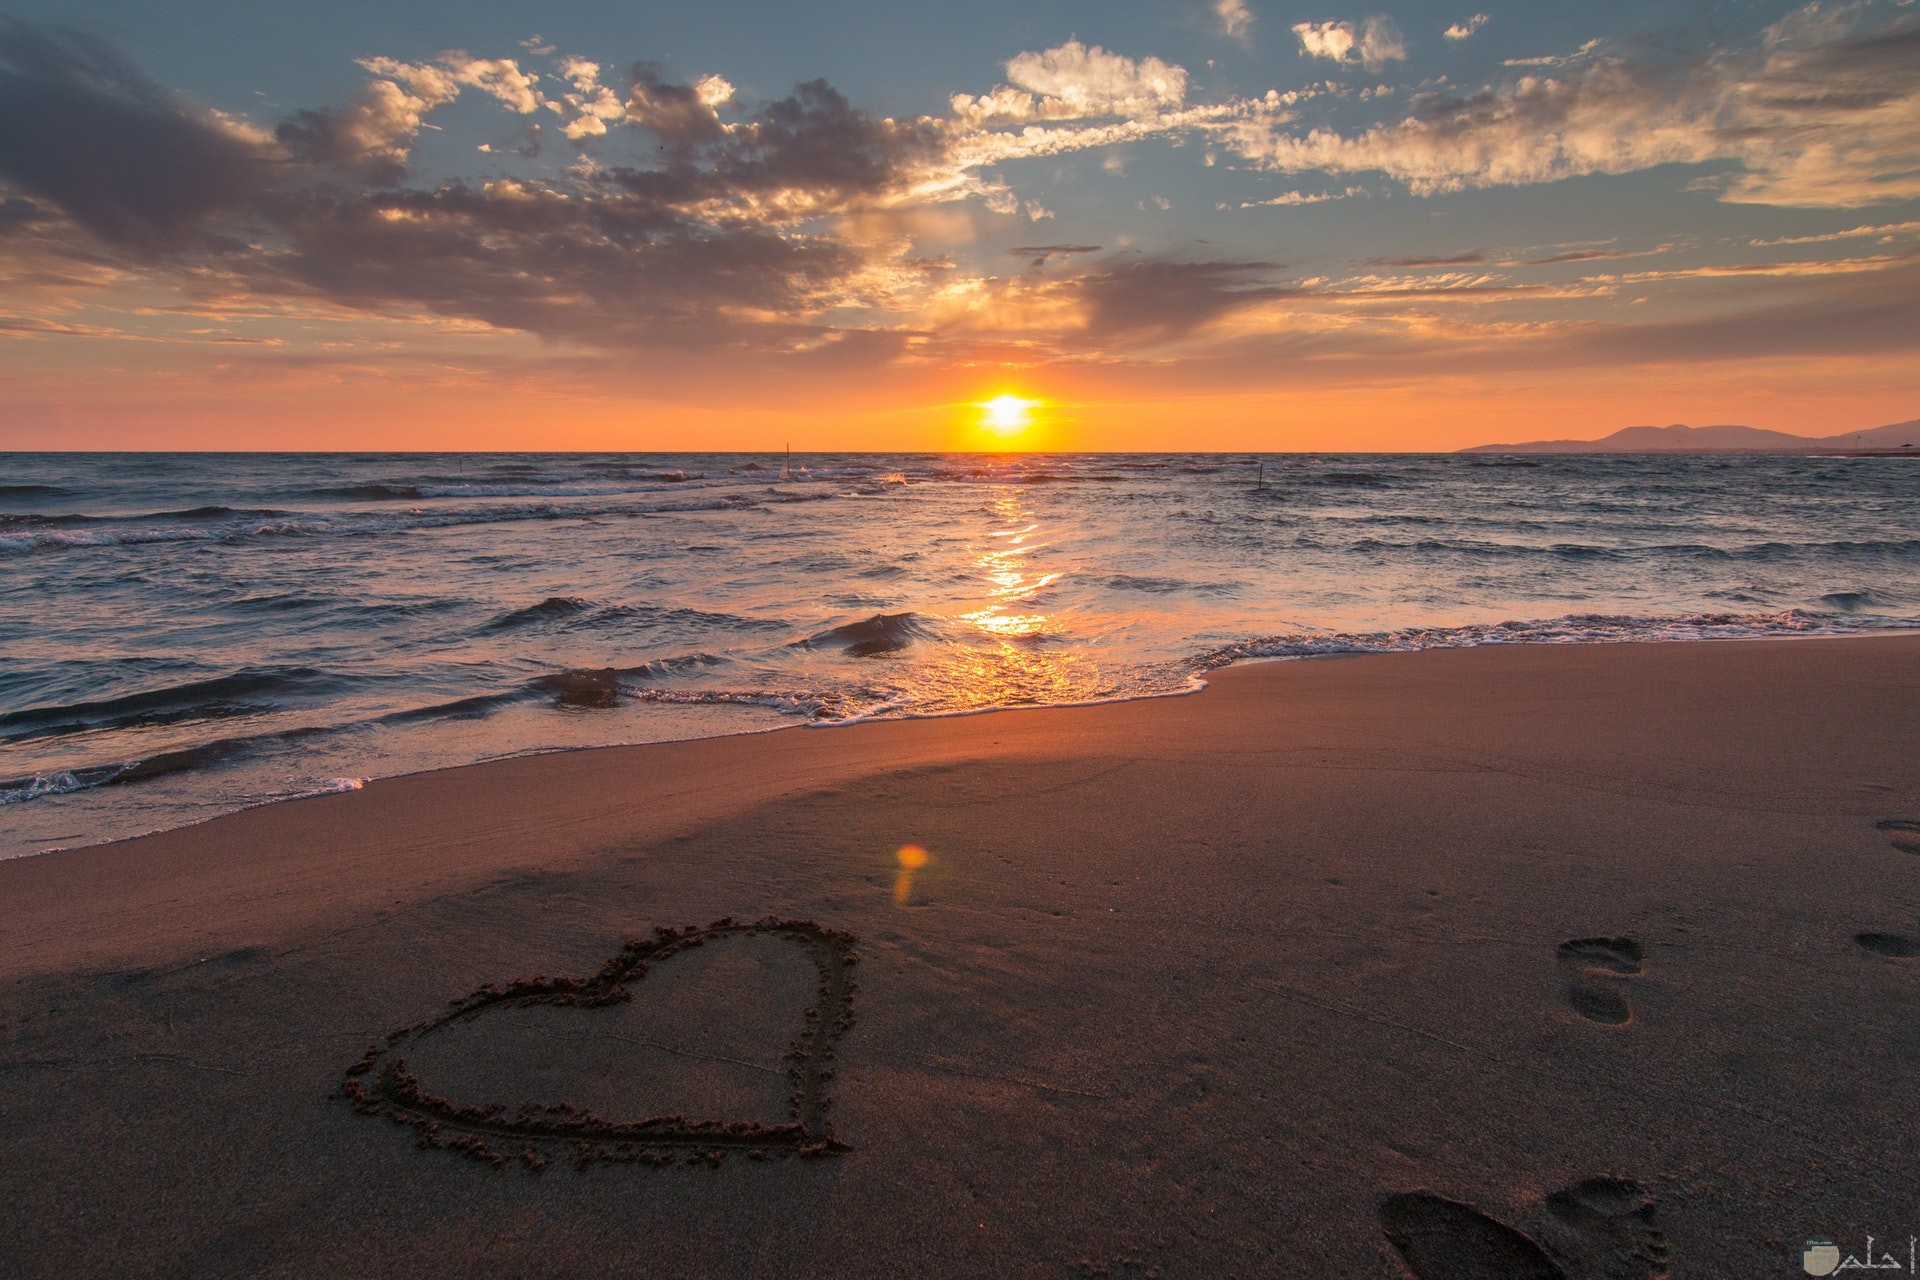 صورة حب جميلة لقلب مرسوم علي شاطئ البحر مع غروب الشمس